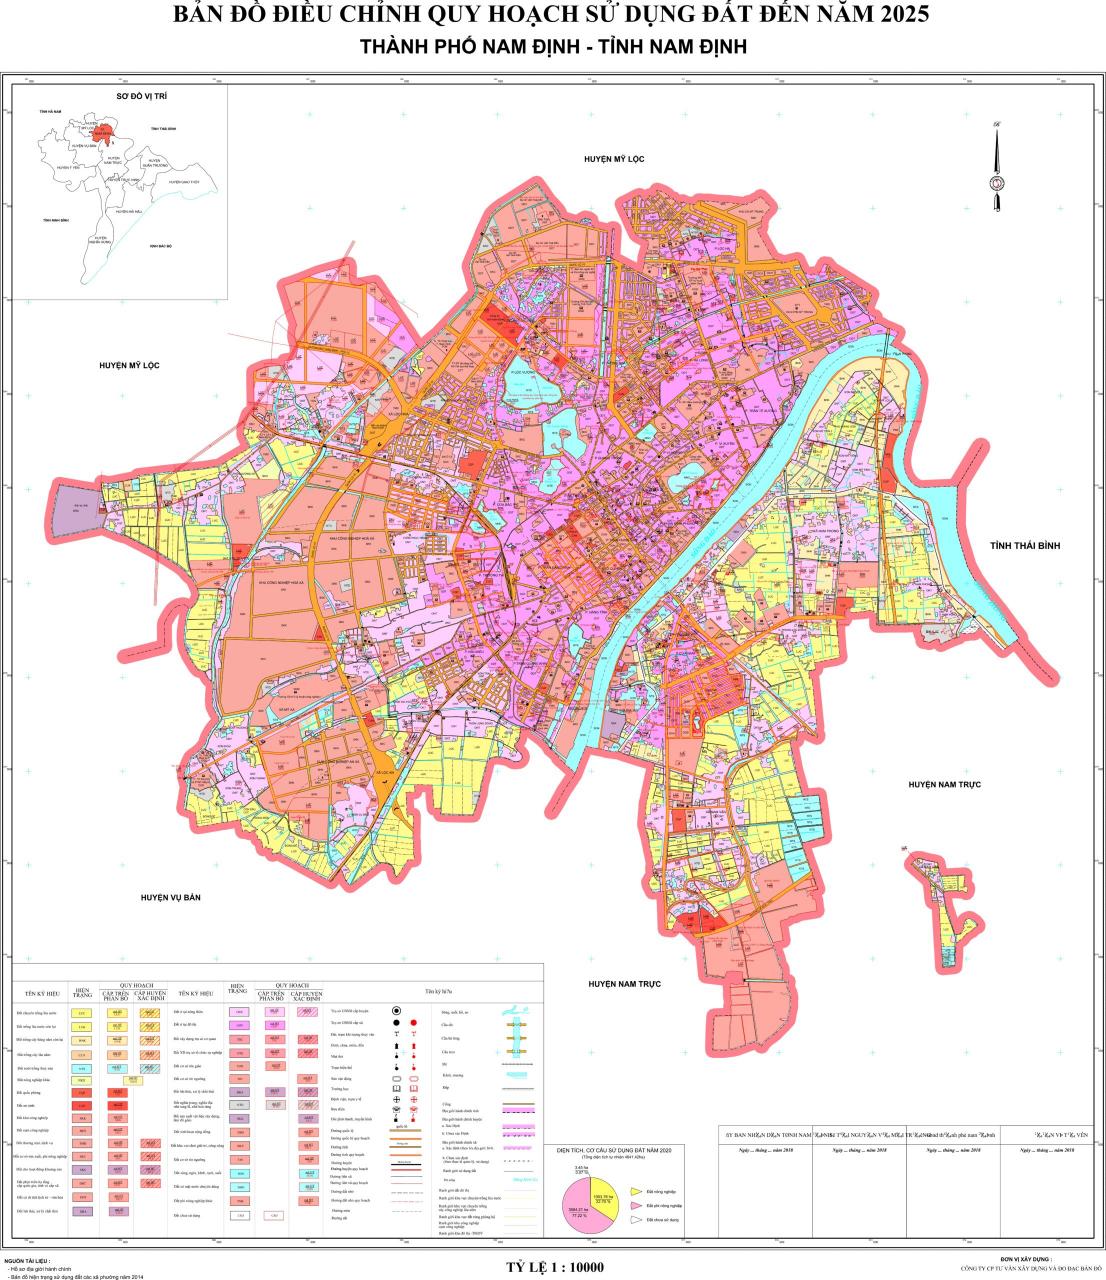 quy hoạch thành phố nam định đến năm 2025